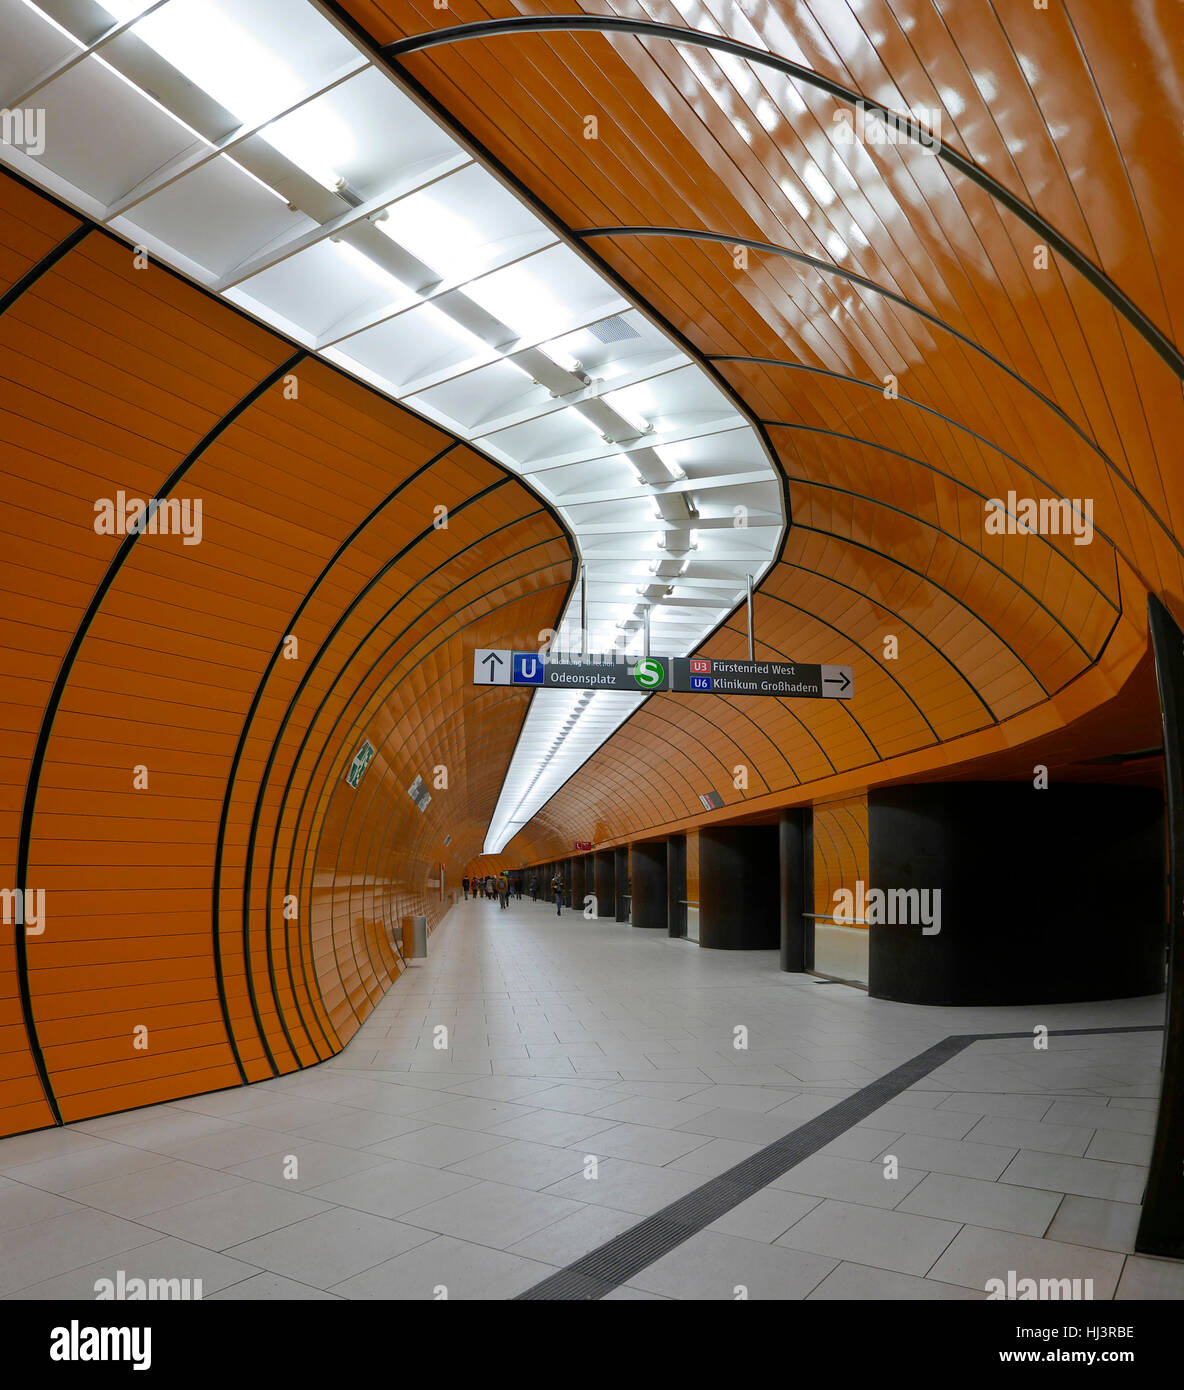 Alemania Munich Marienplatz estación del metro Foto de stock